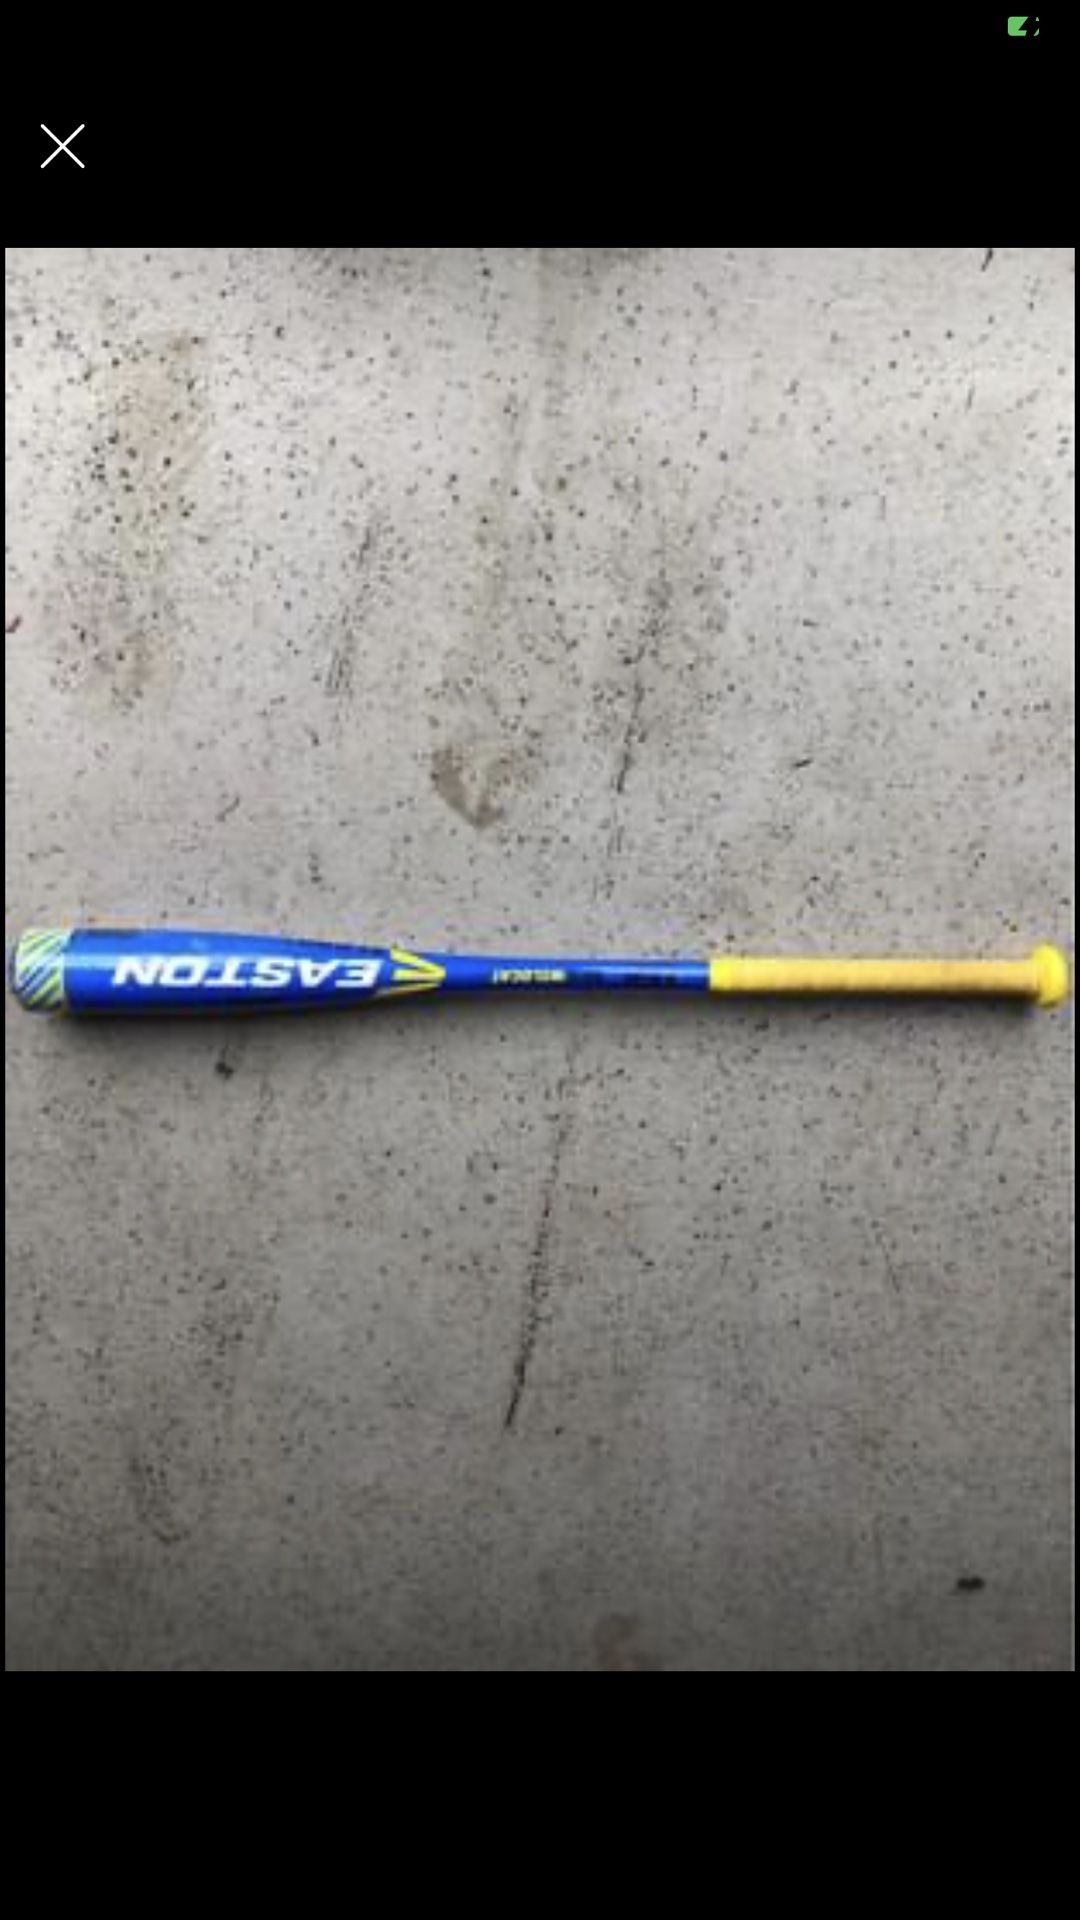 Easton baseball bat 28” -10